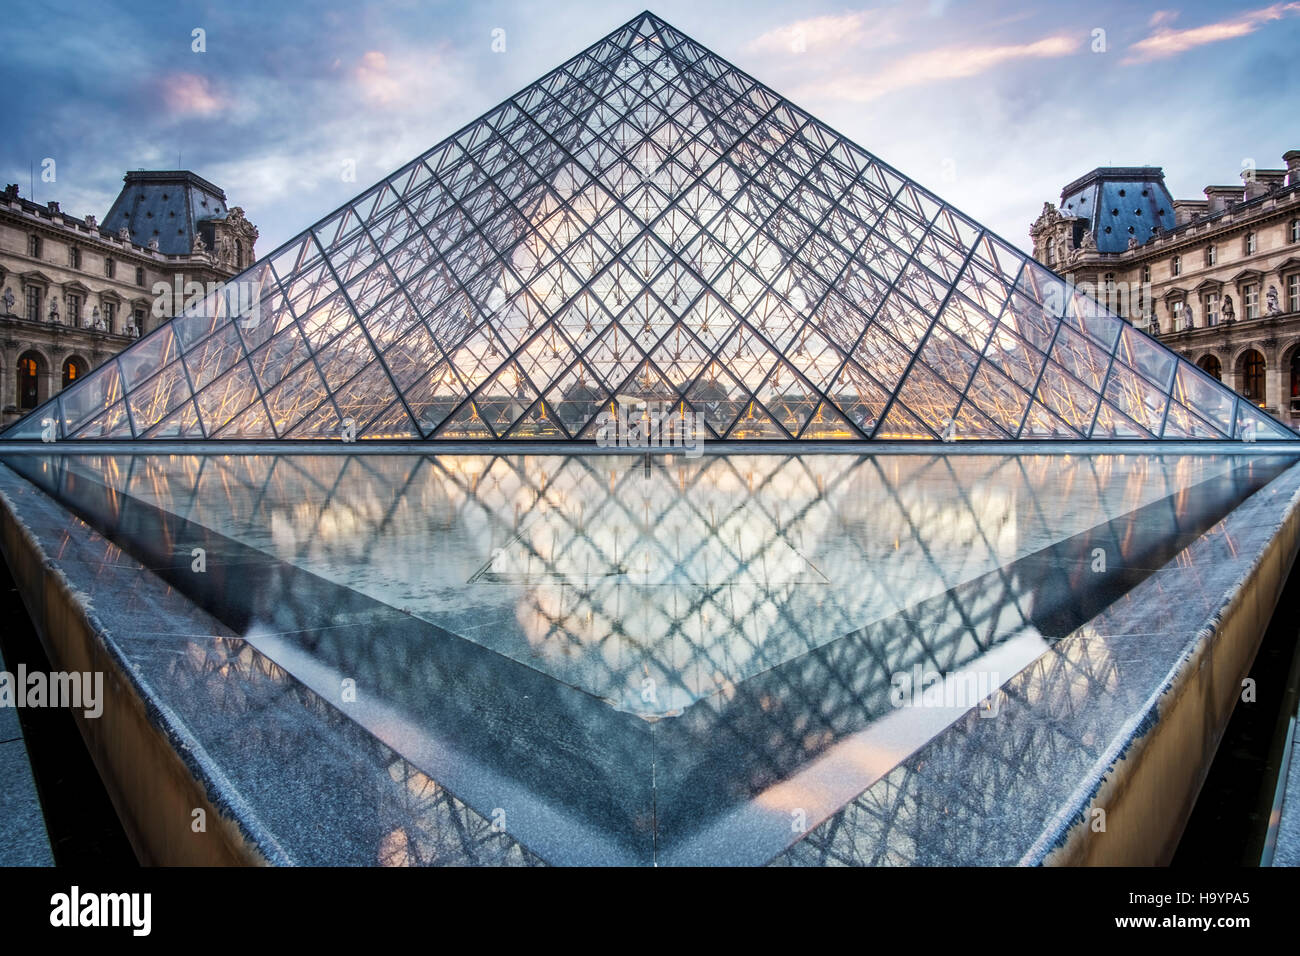 L'entrée de la pyramide de verre du Louvre, conçue par l'architecte I.M. Pei. Soir tourné en été. Banque D'Images